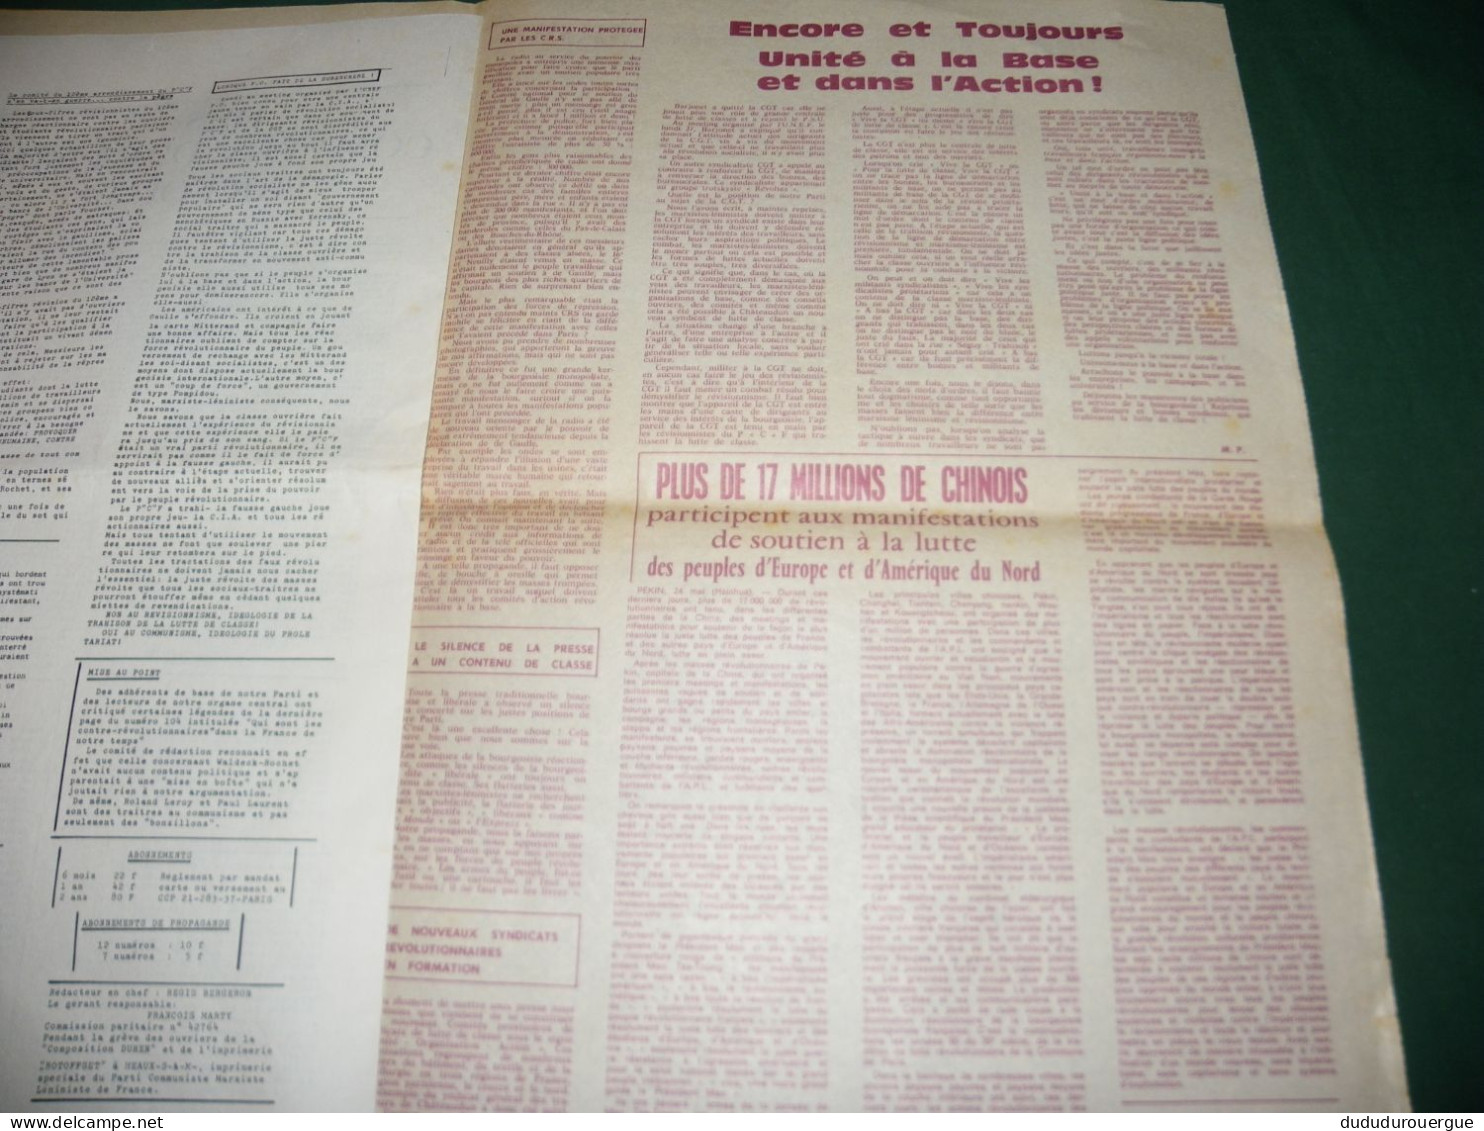 MAI 68 : " L HUMANITE NOUVELLE " ORGANE CENTRAL DU PARTI COMMUNISTE MARXISTE LENINISTE DE FRANCE : N ° SPECIAL - 1950 - Today